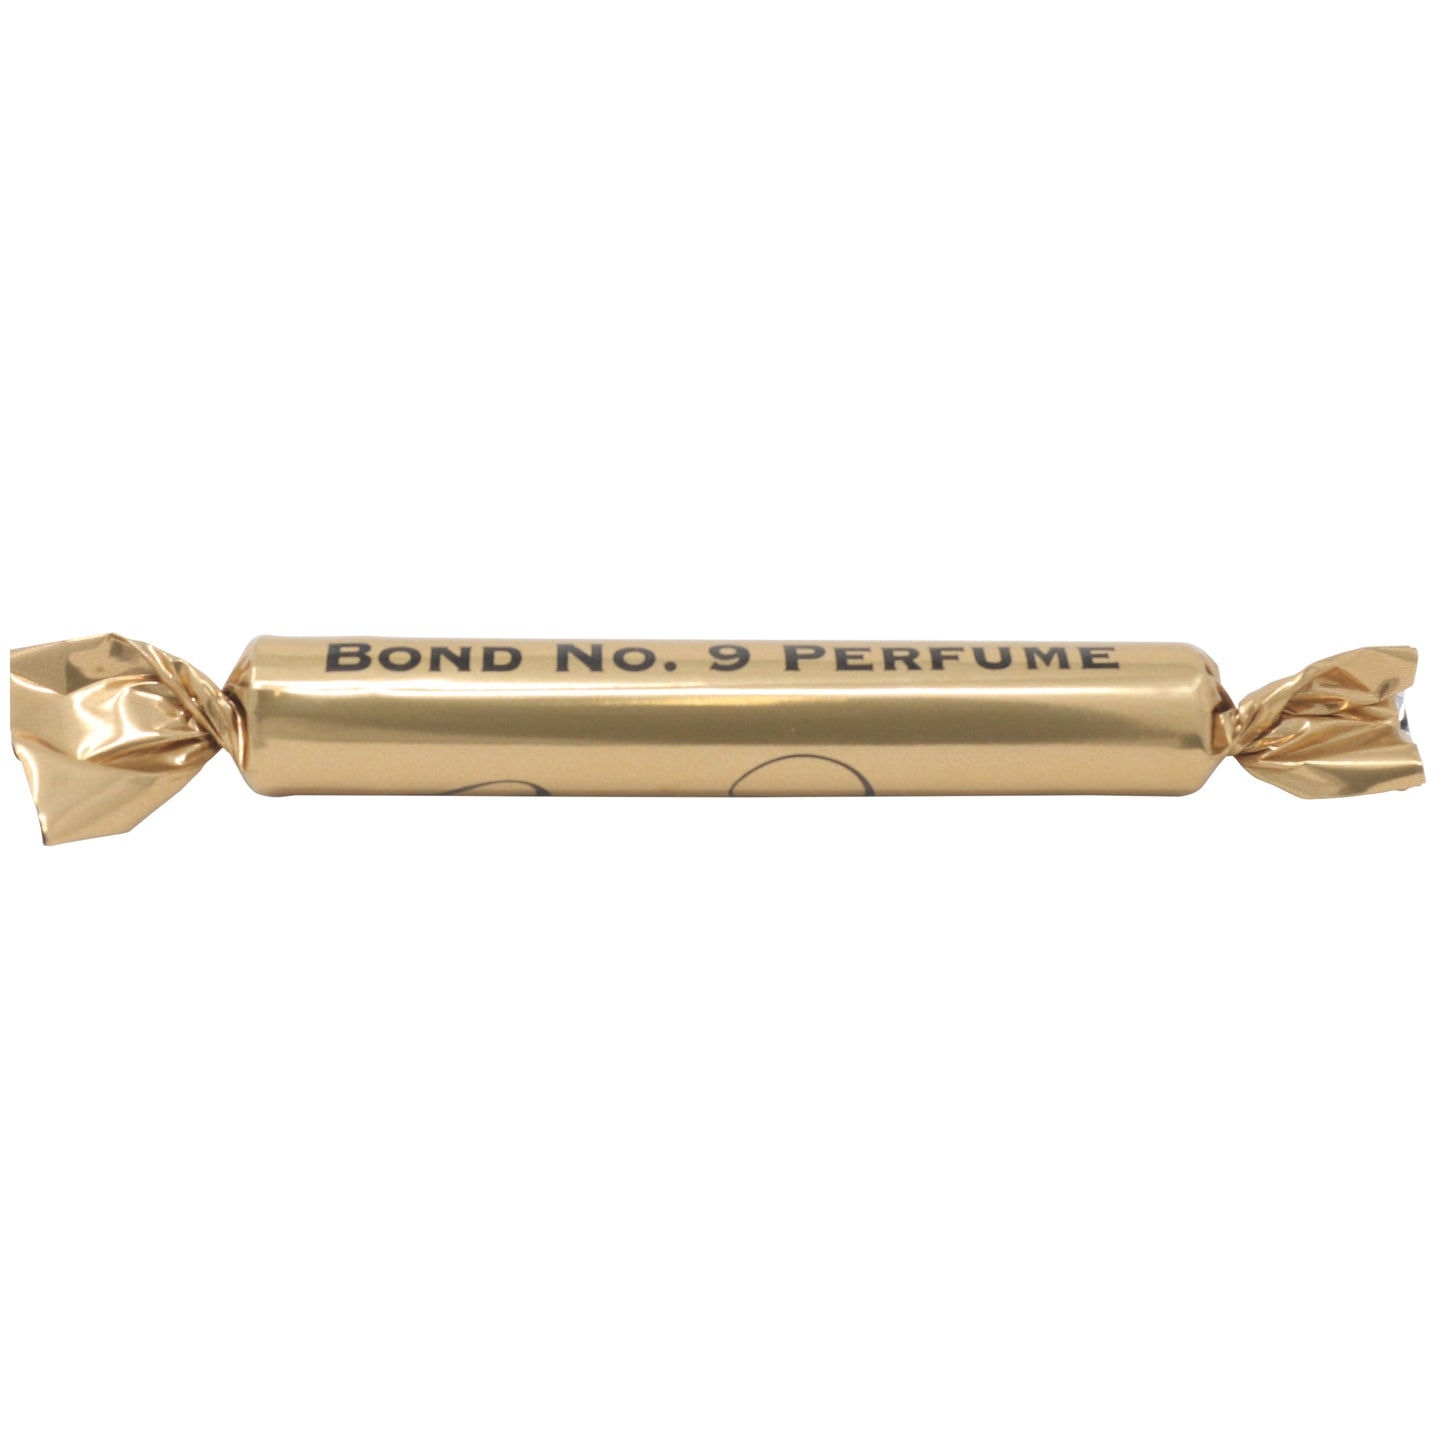 Bond No. 9 Bond No. 9 Perfume 1.7ml 0.054 Fl. Onz. muestra oficial de perfumes